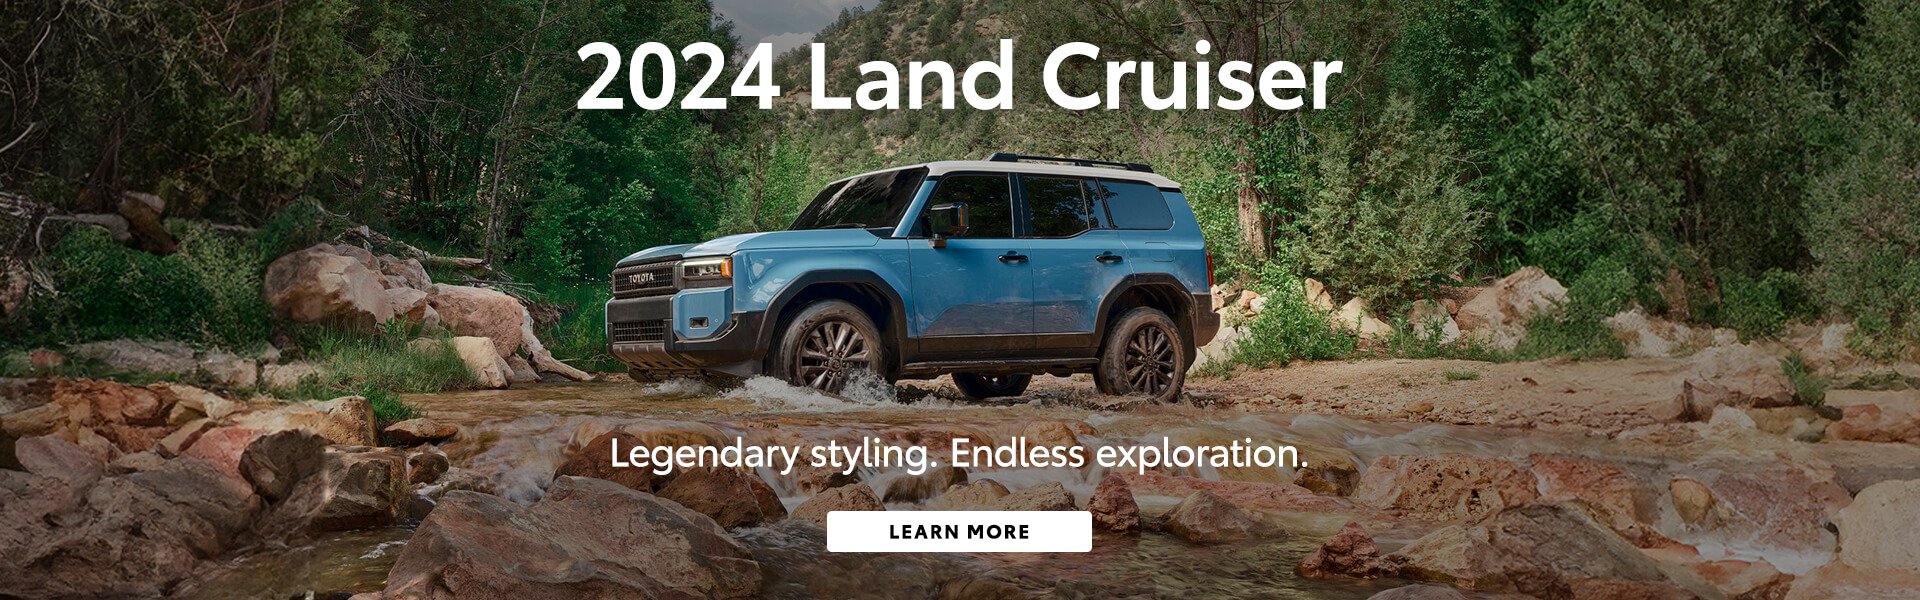 2024 Land Cruiser